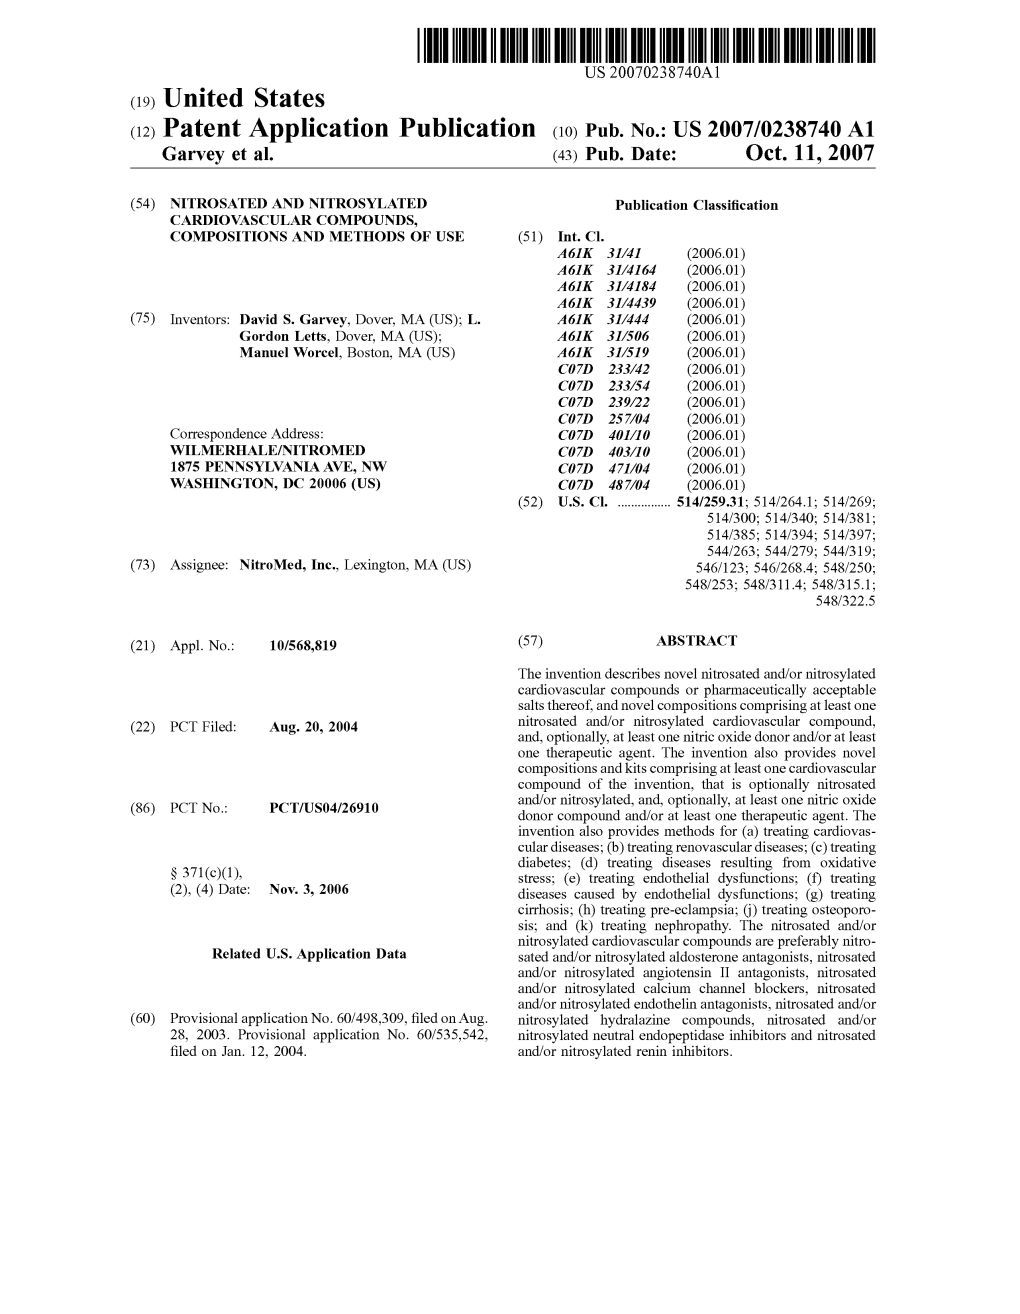 (12) Patent Application Publication (10) Pub. No.: US 2007/023874.0 A1 Garvey Et Al